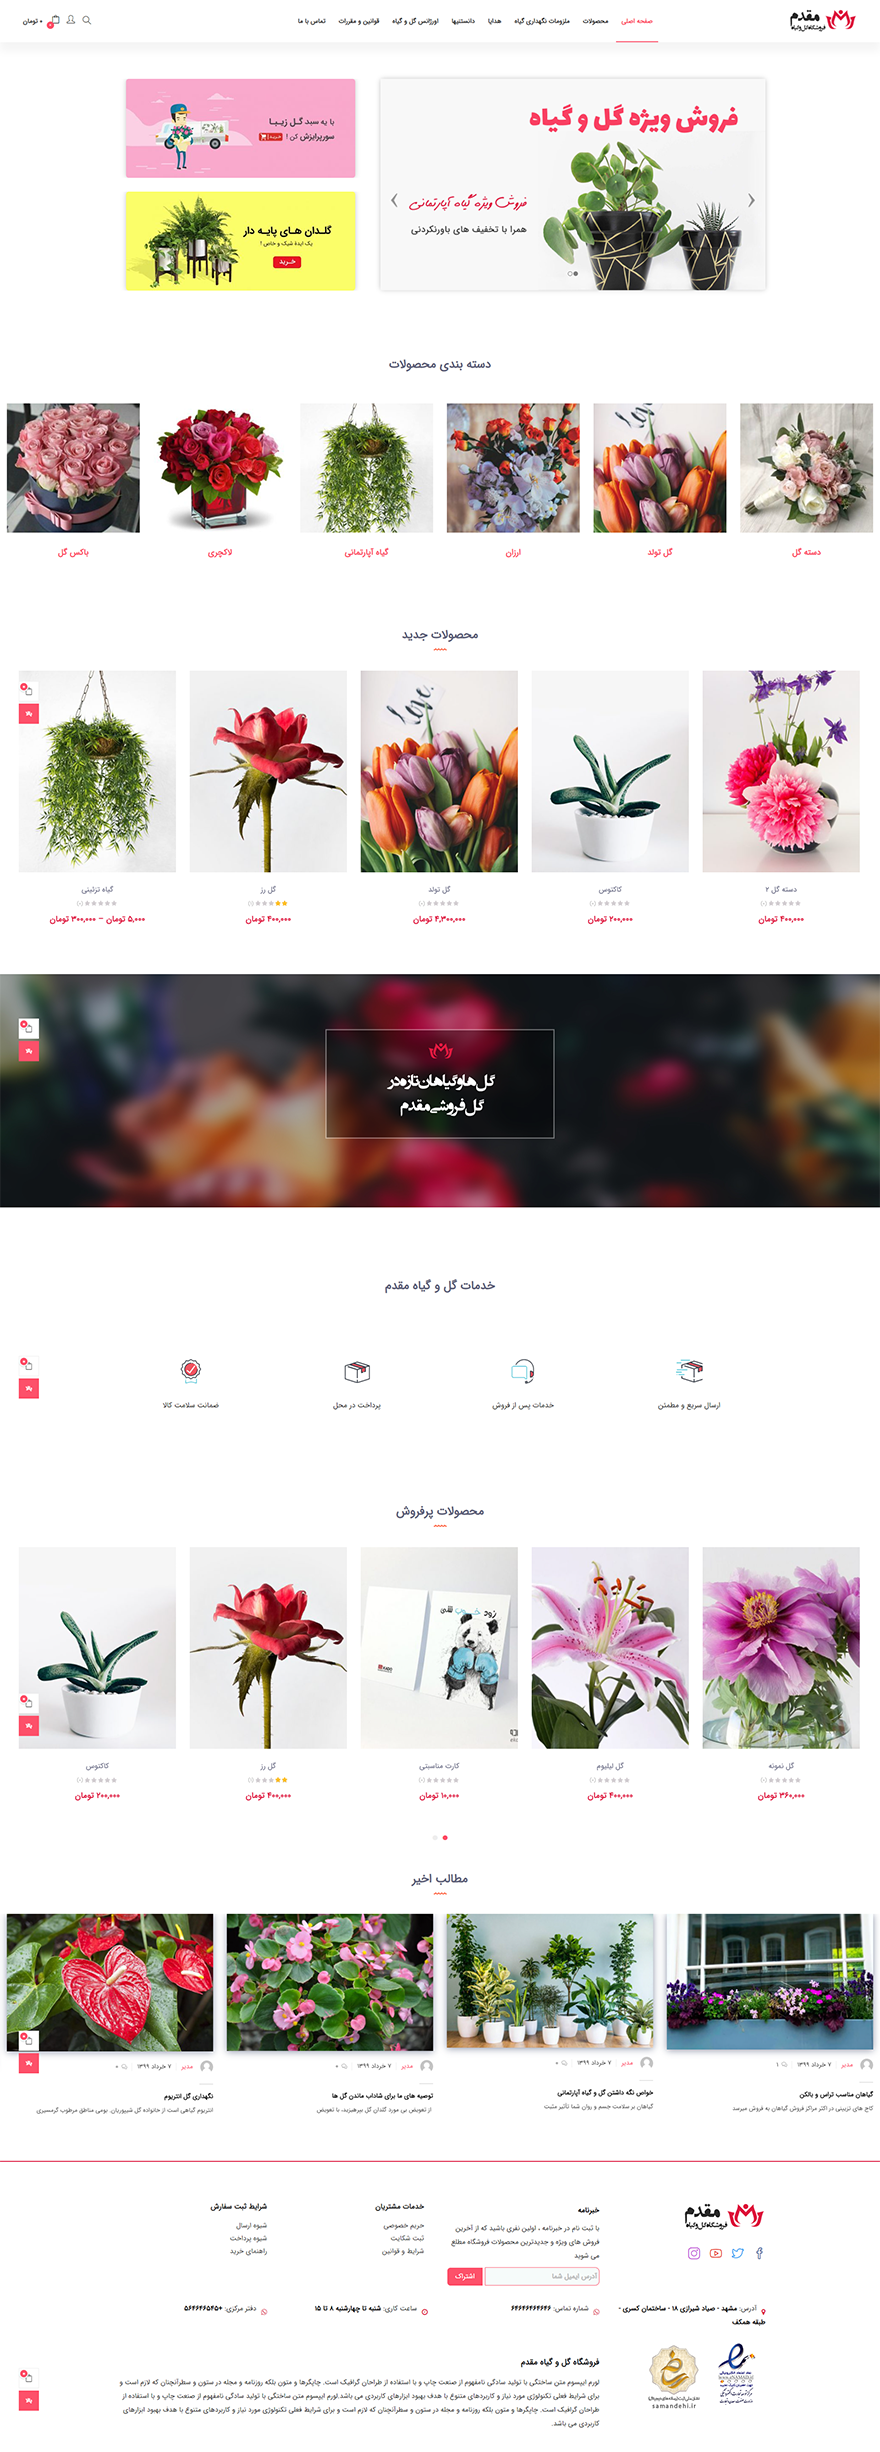 طراحی سایت فروشگاه گل و گیاه مقدم